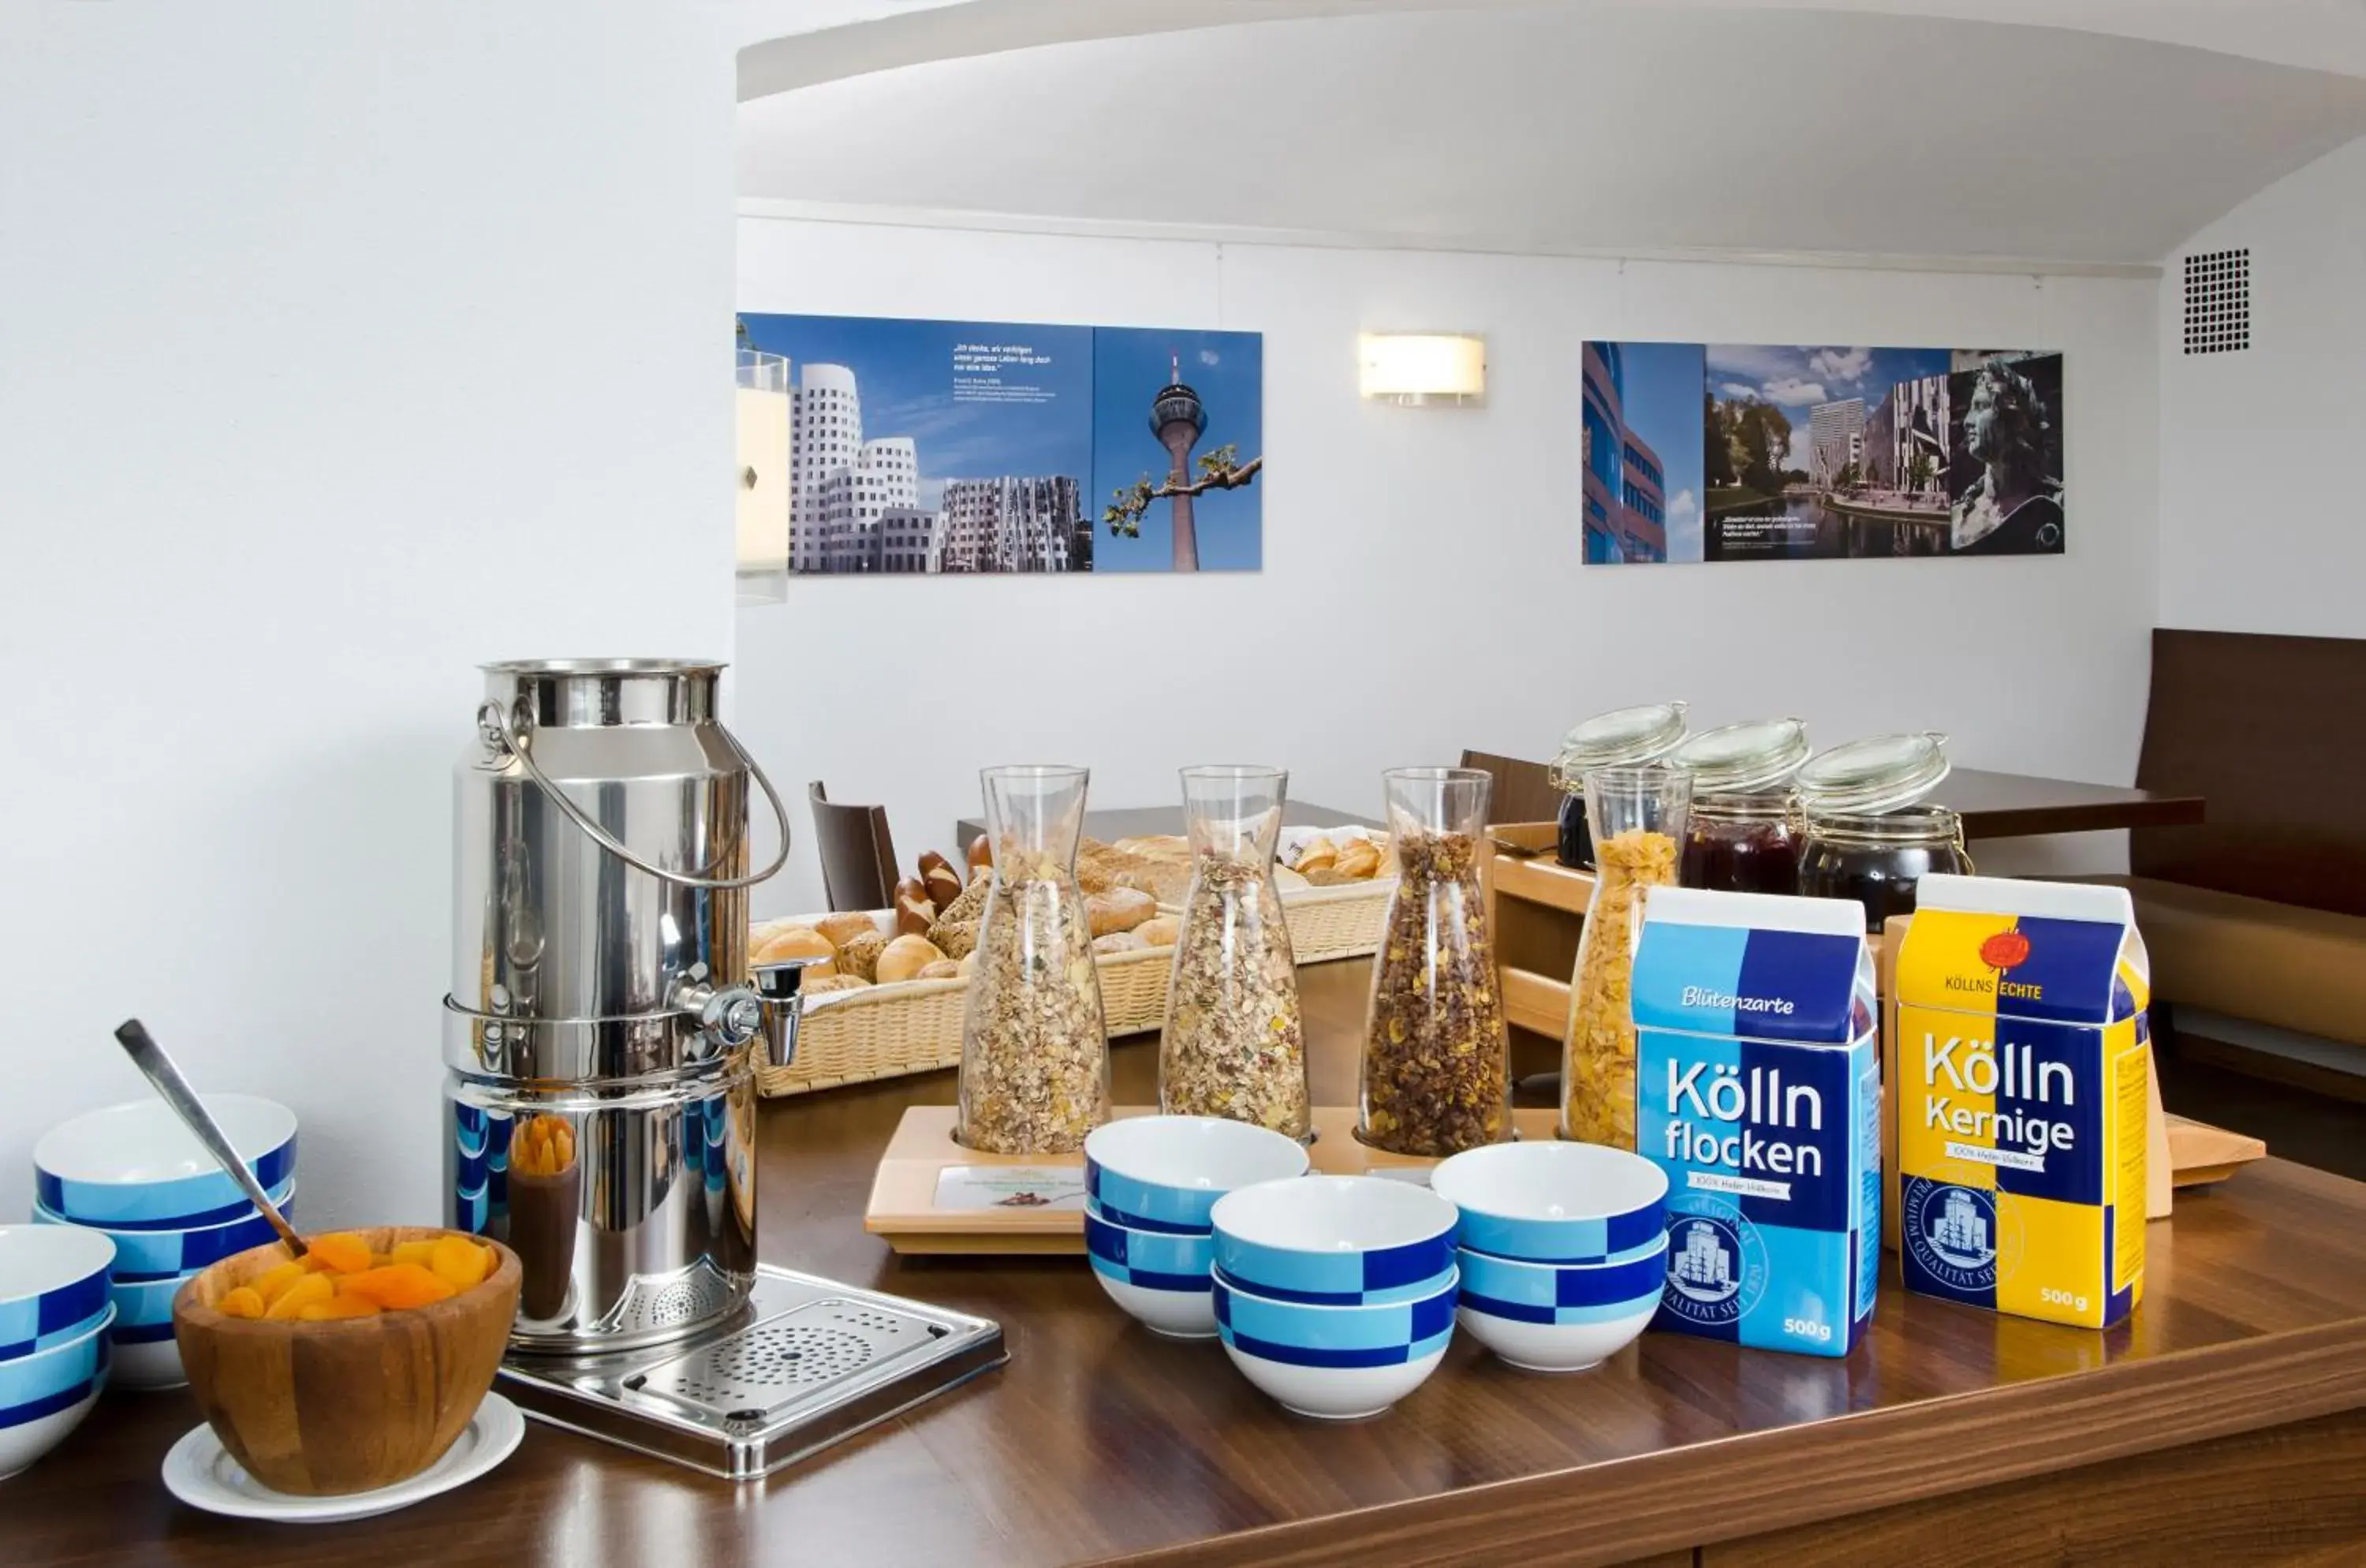 Buffet breakfast, Restaurant/Places to Eat in Hotel am Hofgarten